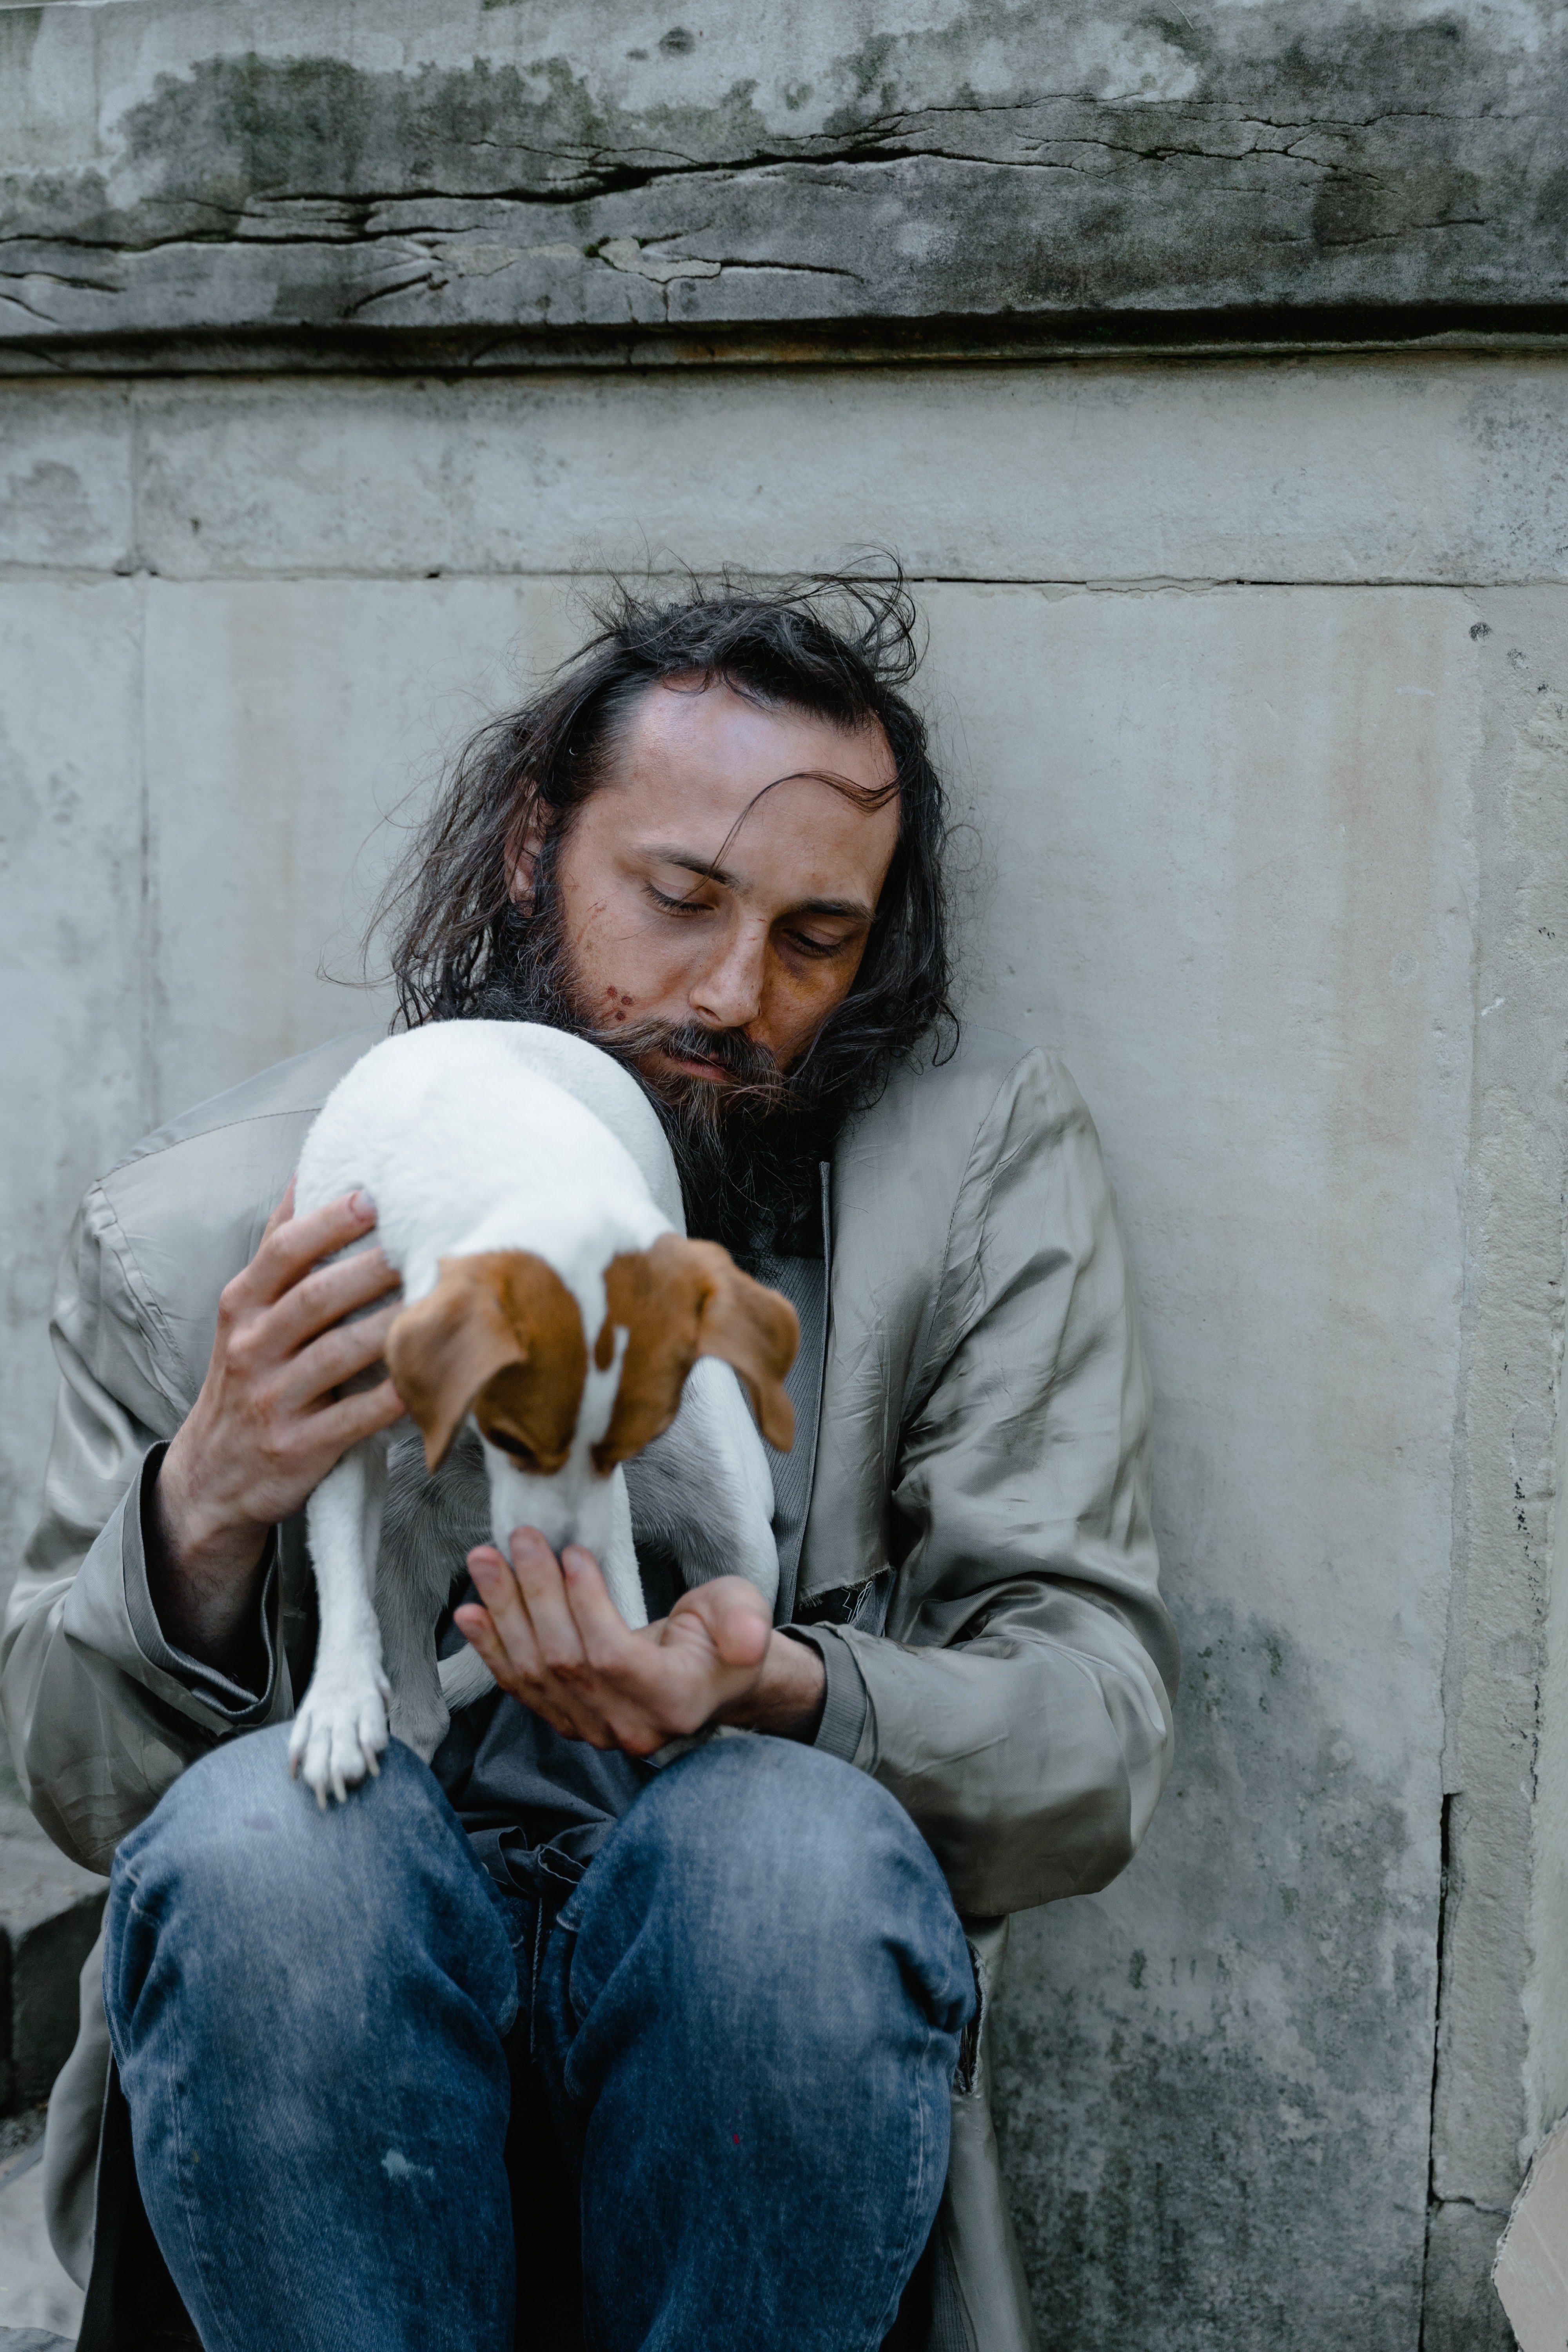 Der Hund gehörte einem Obdachlosen namens Karl. | Quelle: Pexels